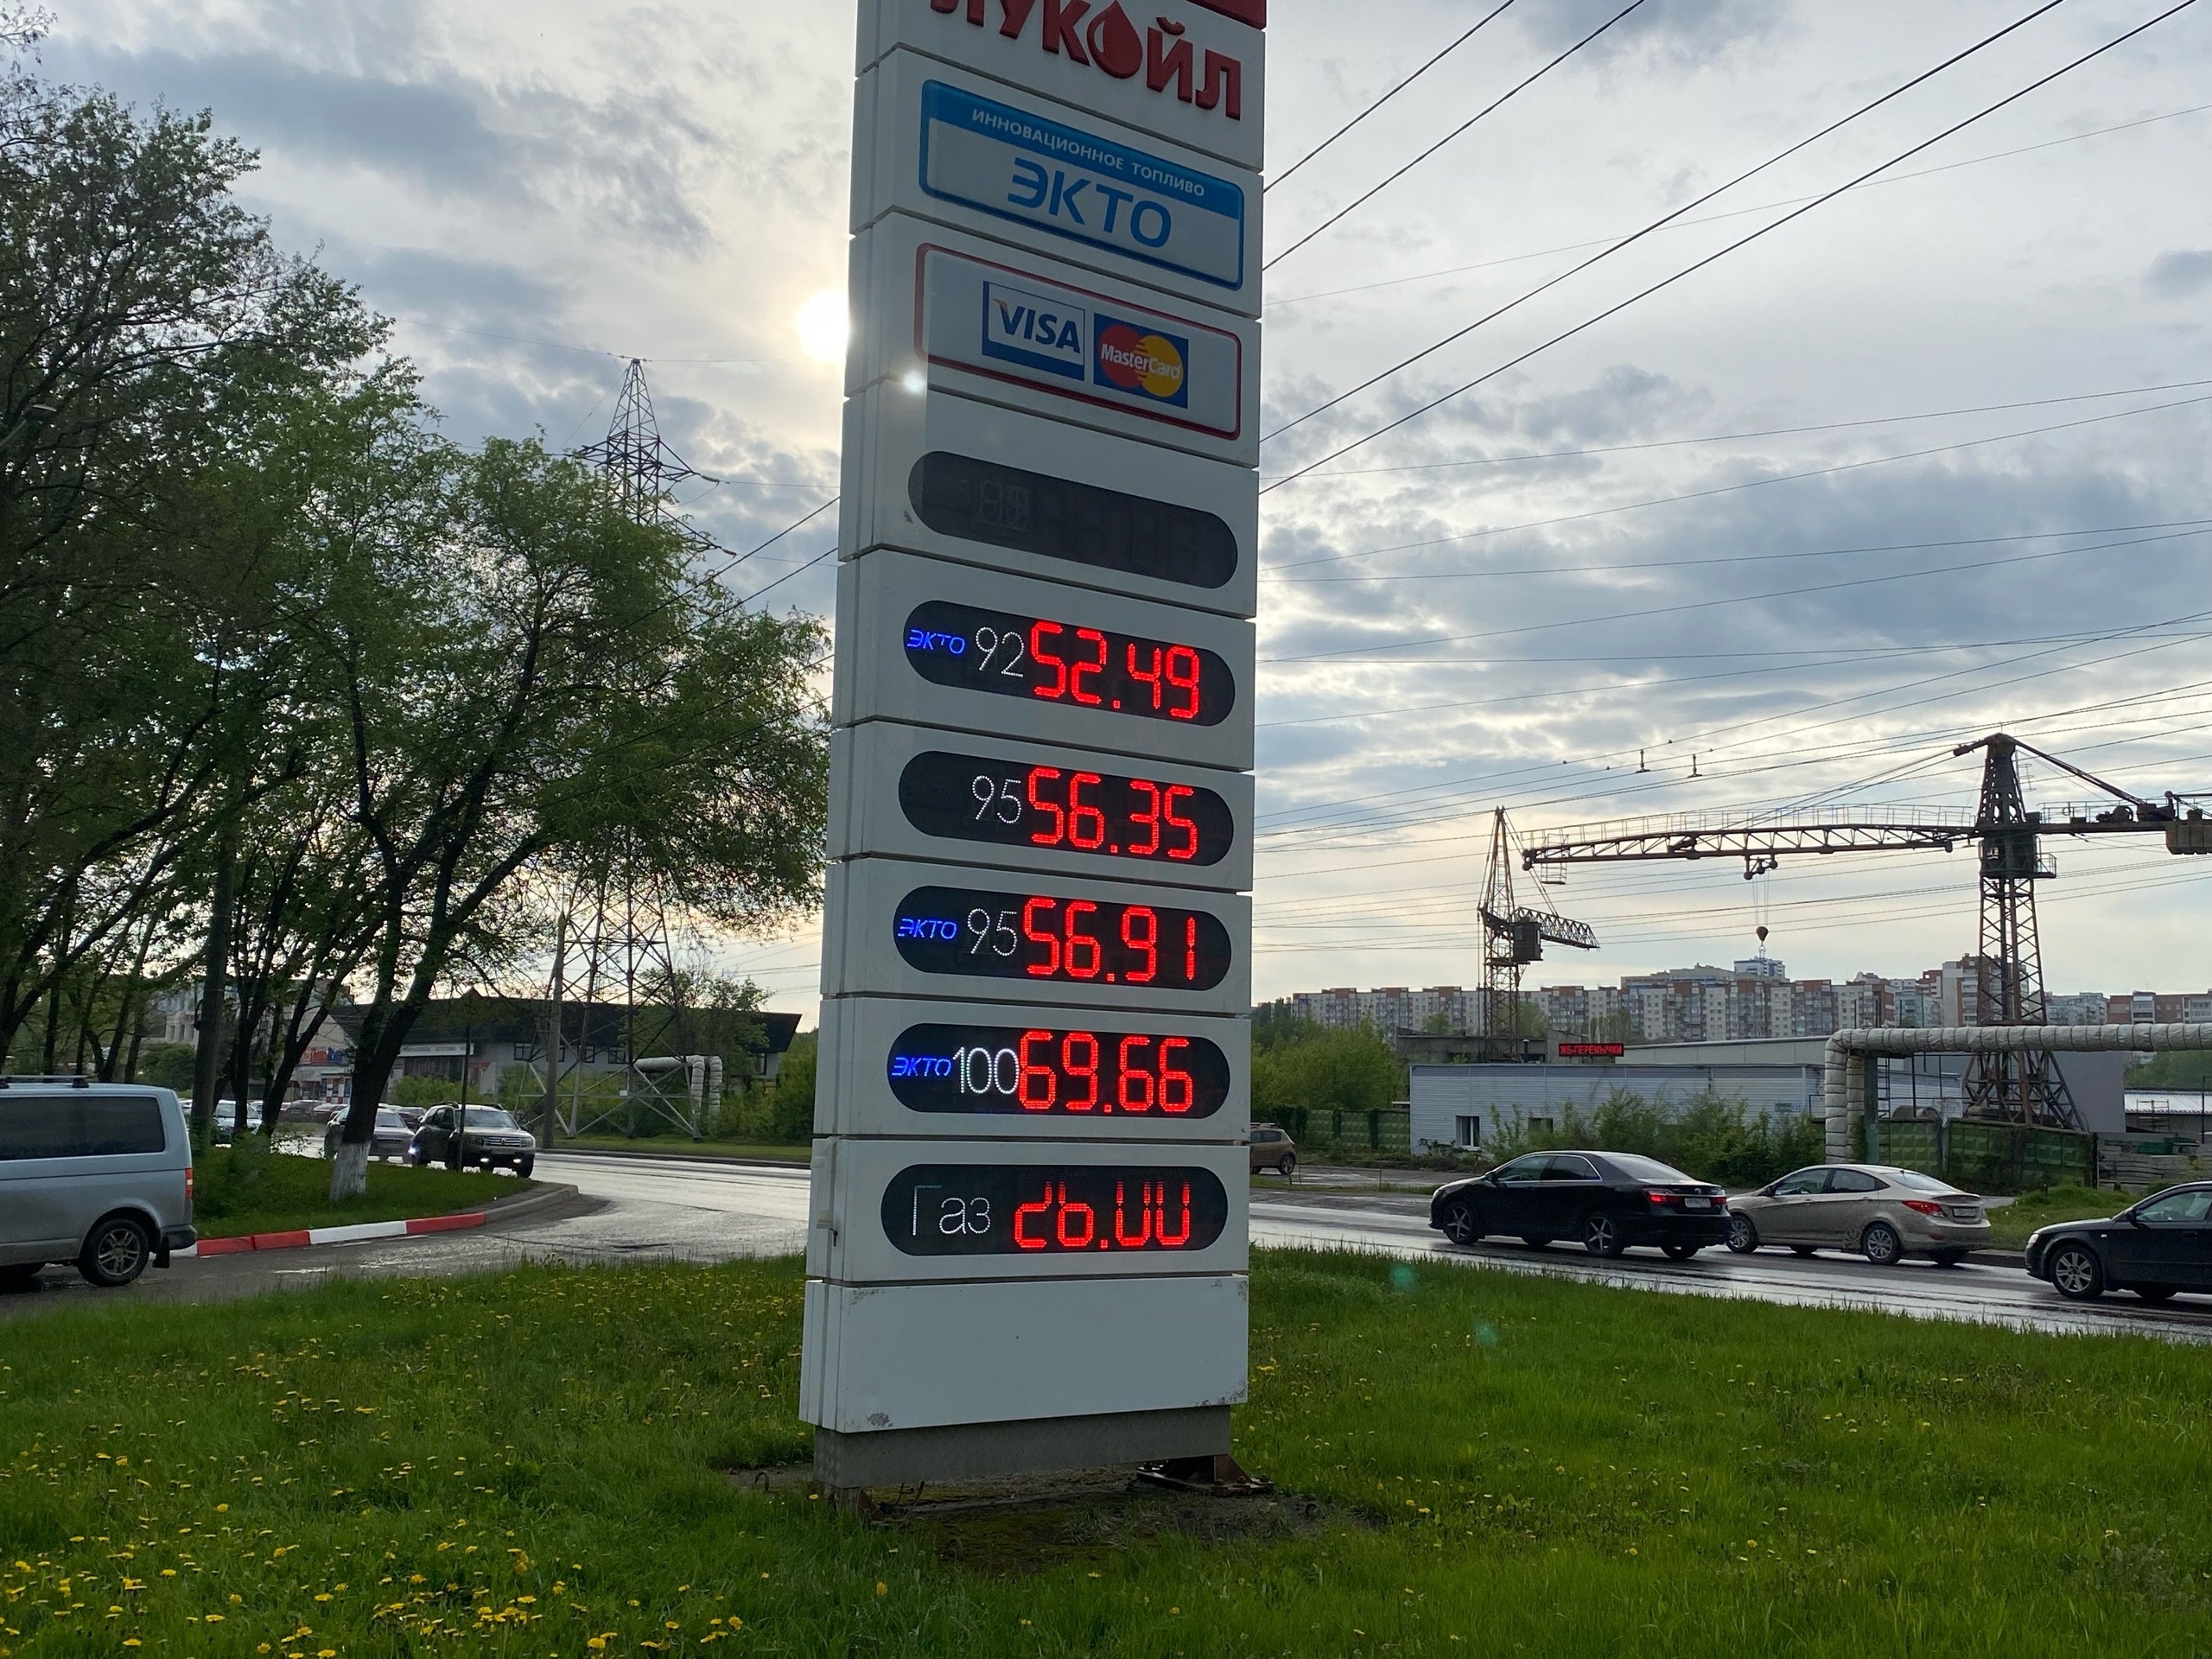 Цены на бензин улетят в небеса: такого еще точно не было. Российски водители ошарашены